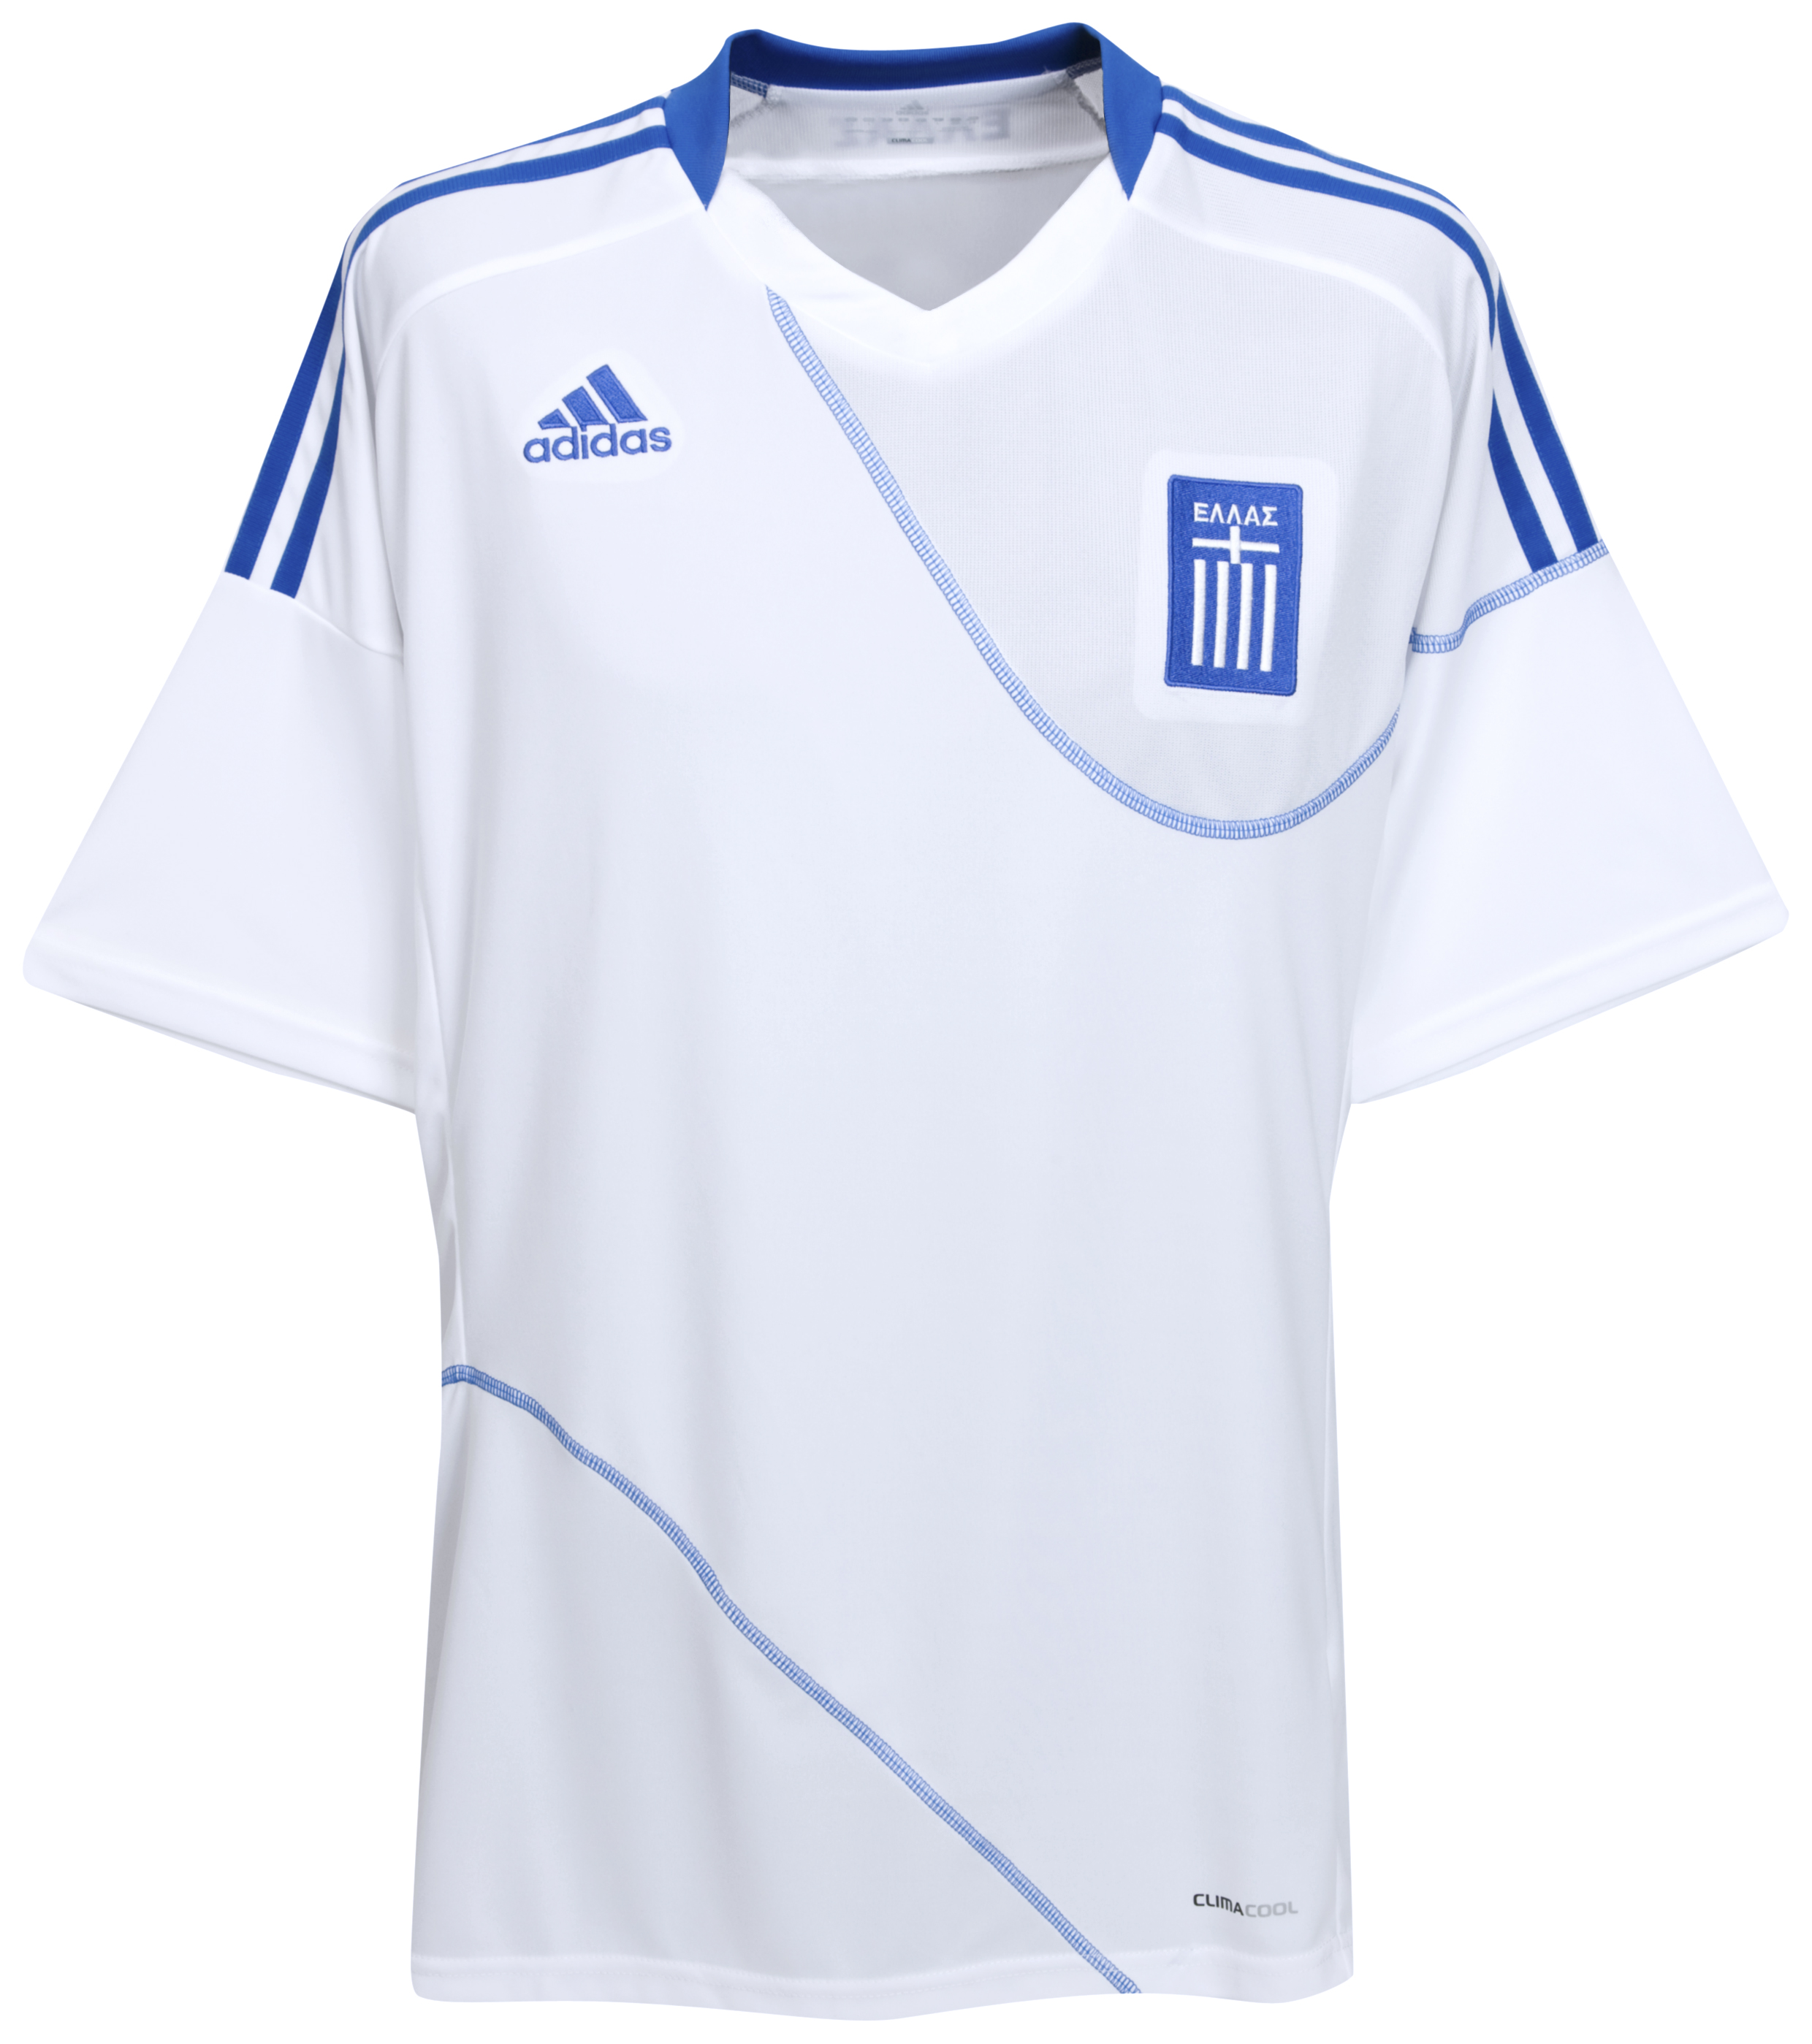 الملابس الرسمية لكأس العالم 2010 Kb-63743